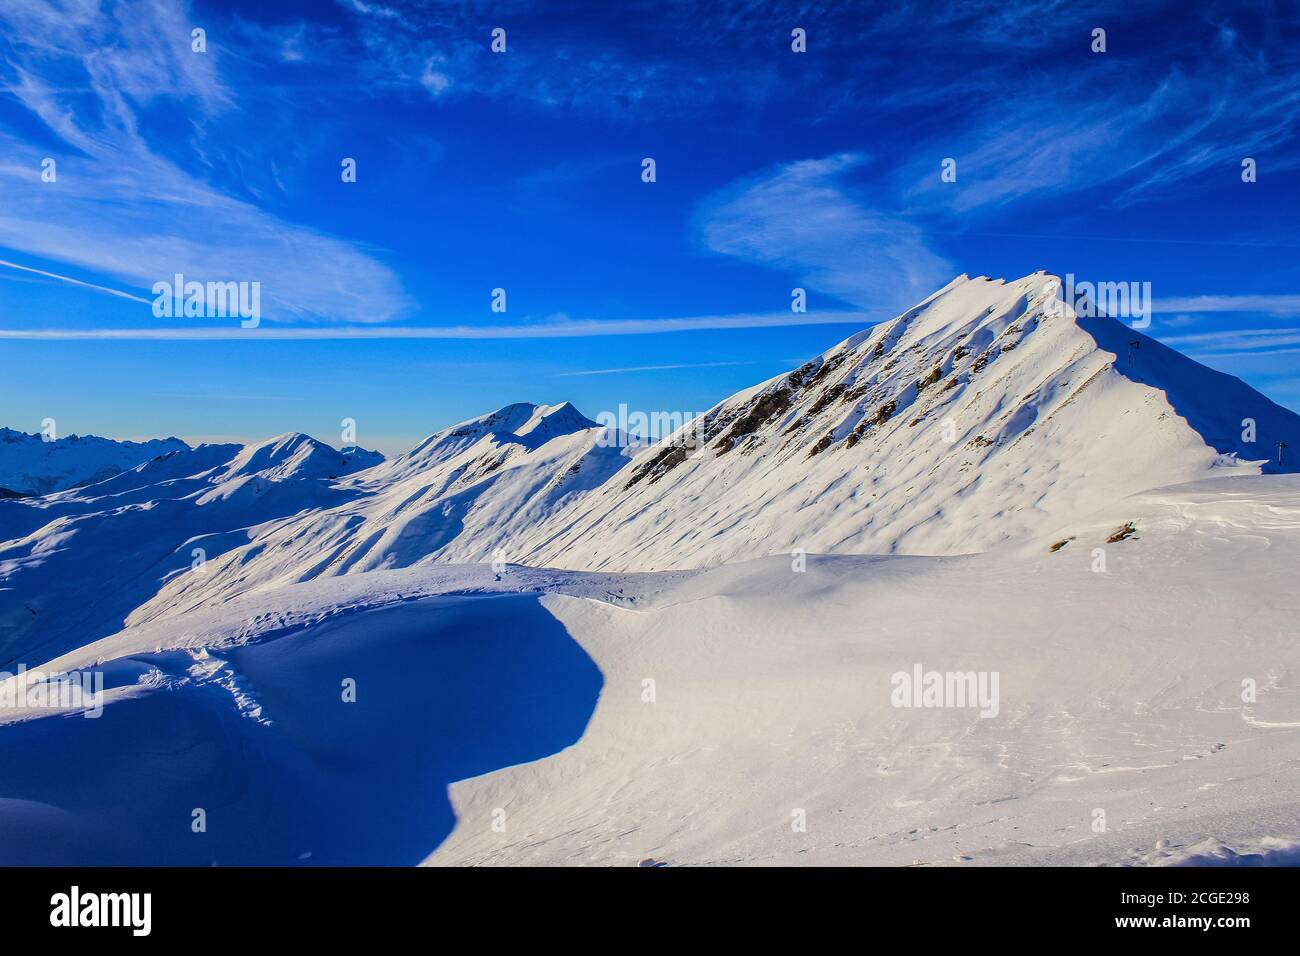 Vue sur le domaine skiable de la Plagne, France Banque D'Images